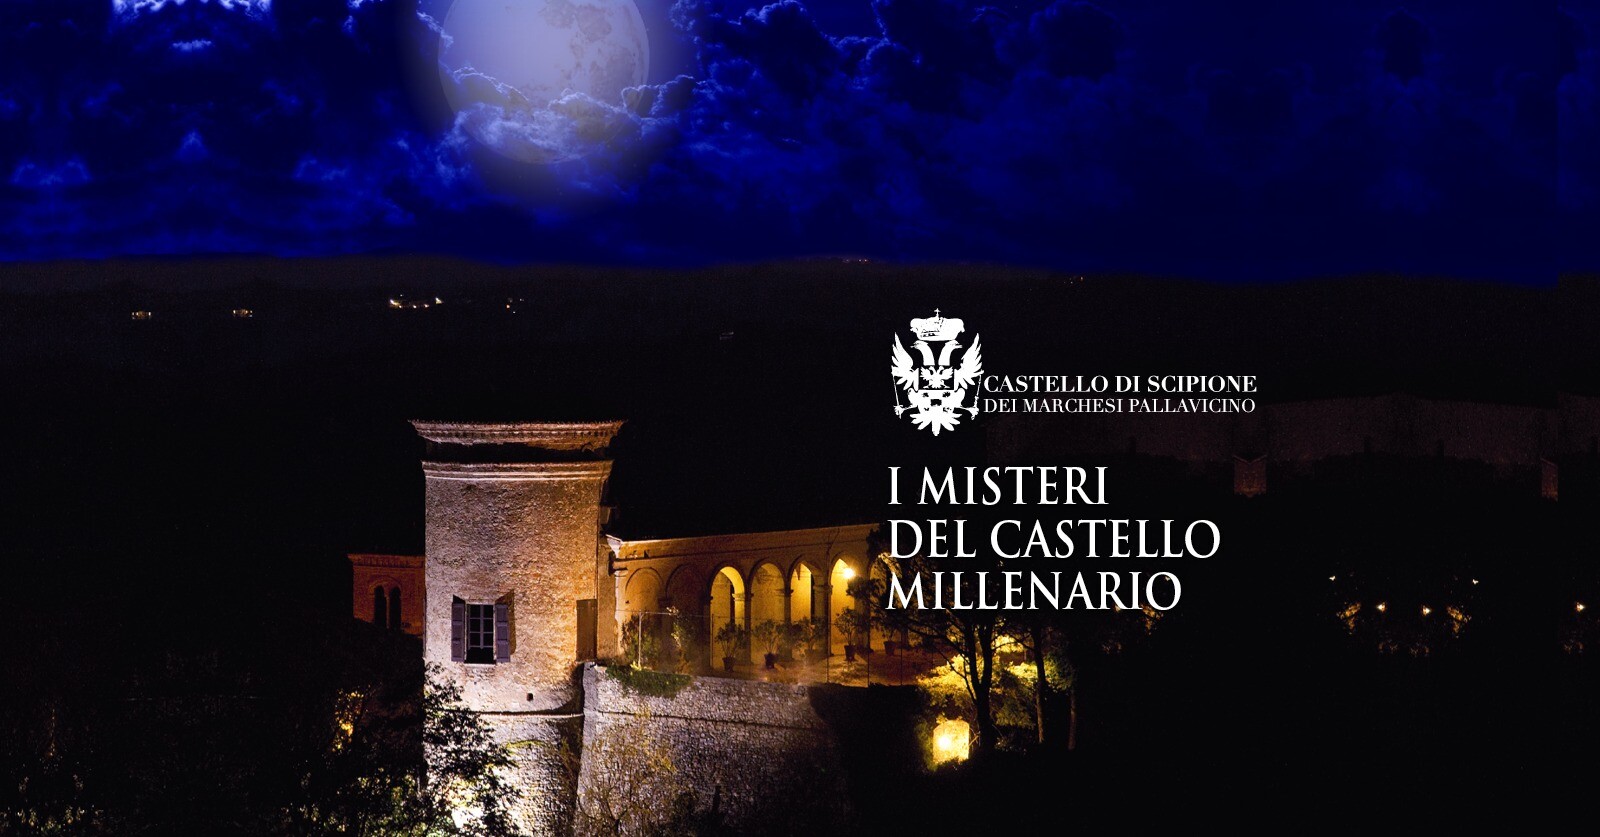 Il millenario Castello di Scipione, raccontato da Carlo Lucarelli nel suo podcast "Giallo in Castello", apre le sue porte per una visita notturna